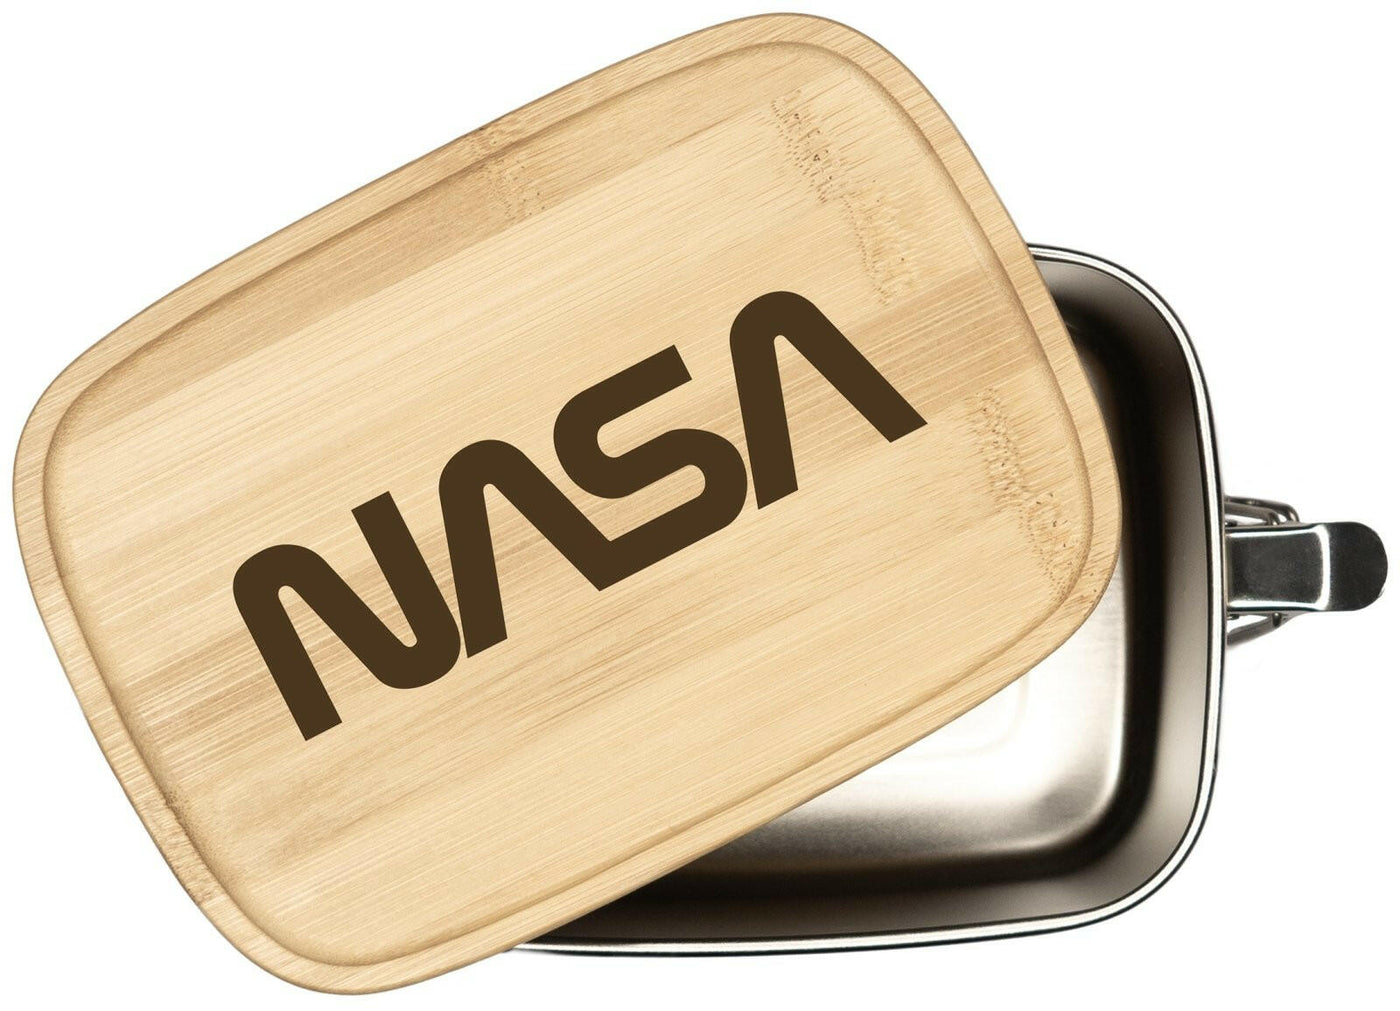 Bild: Brotdose - NASA Worm Logo - Edelstahl mit Bambusdeckel Geschenkidee